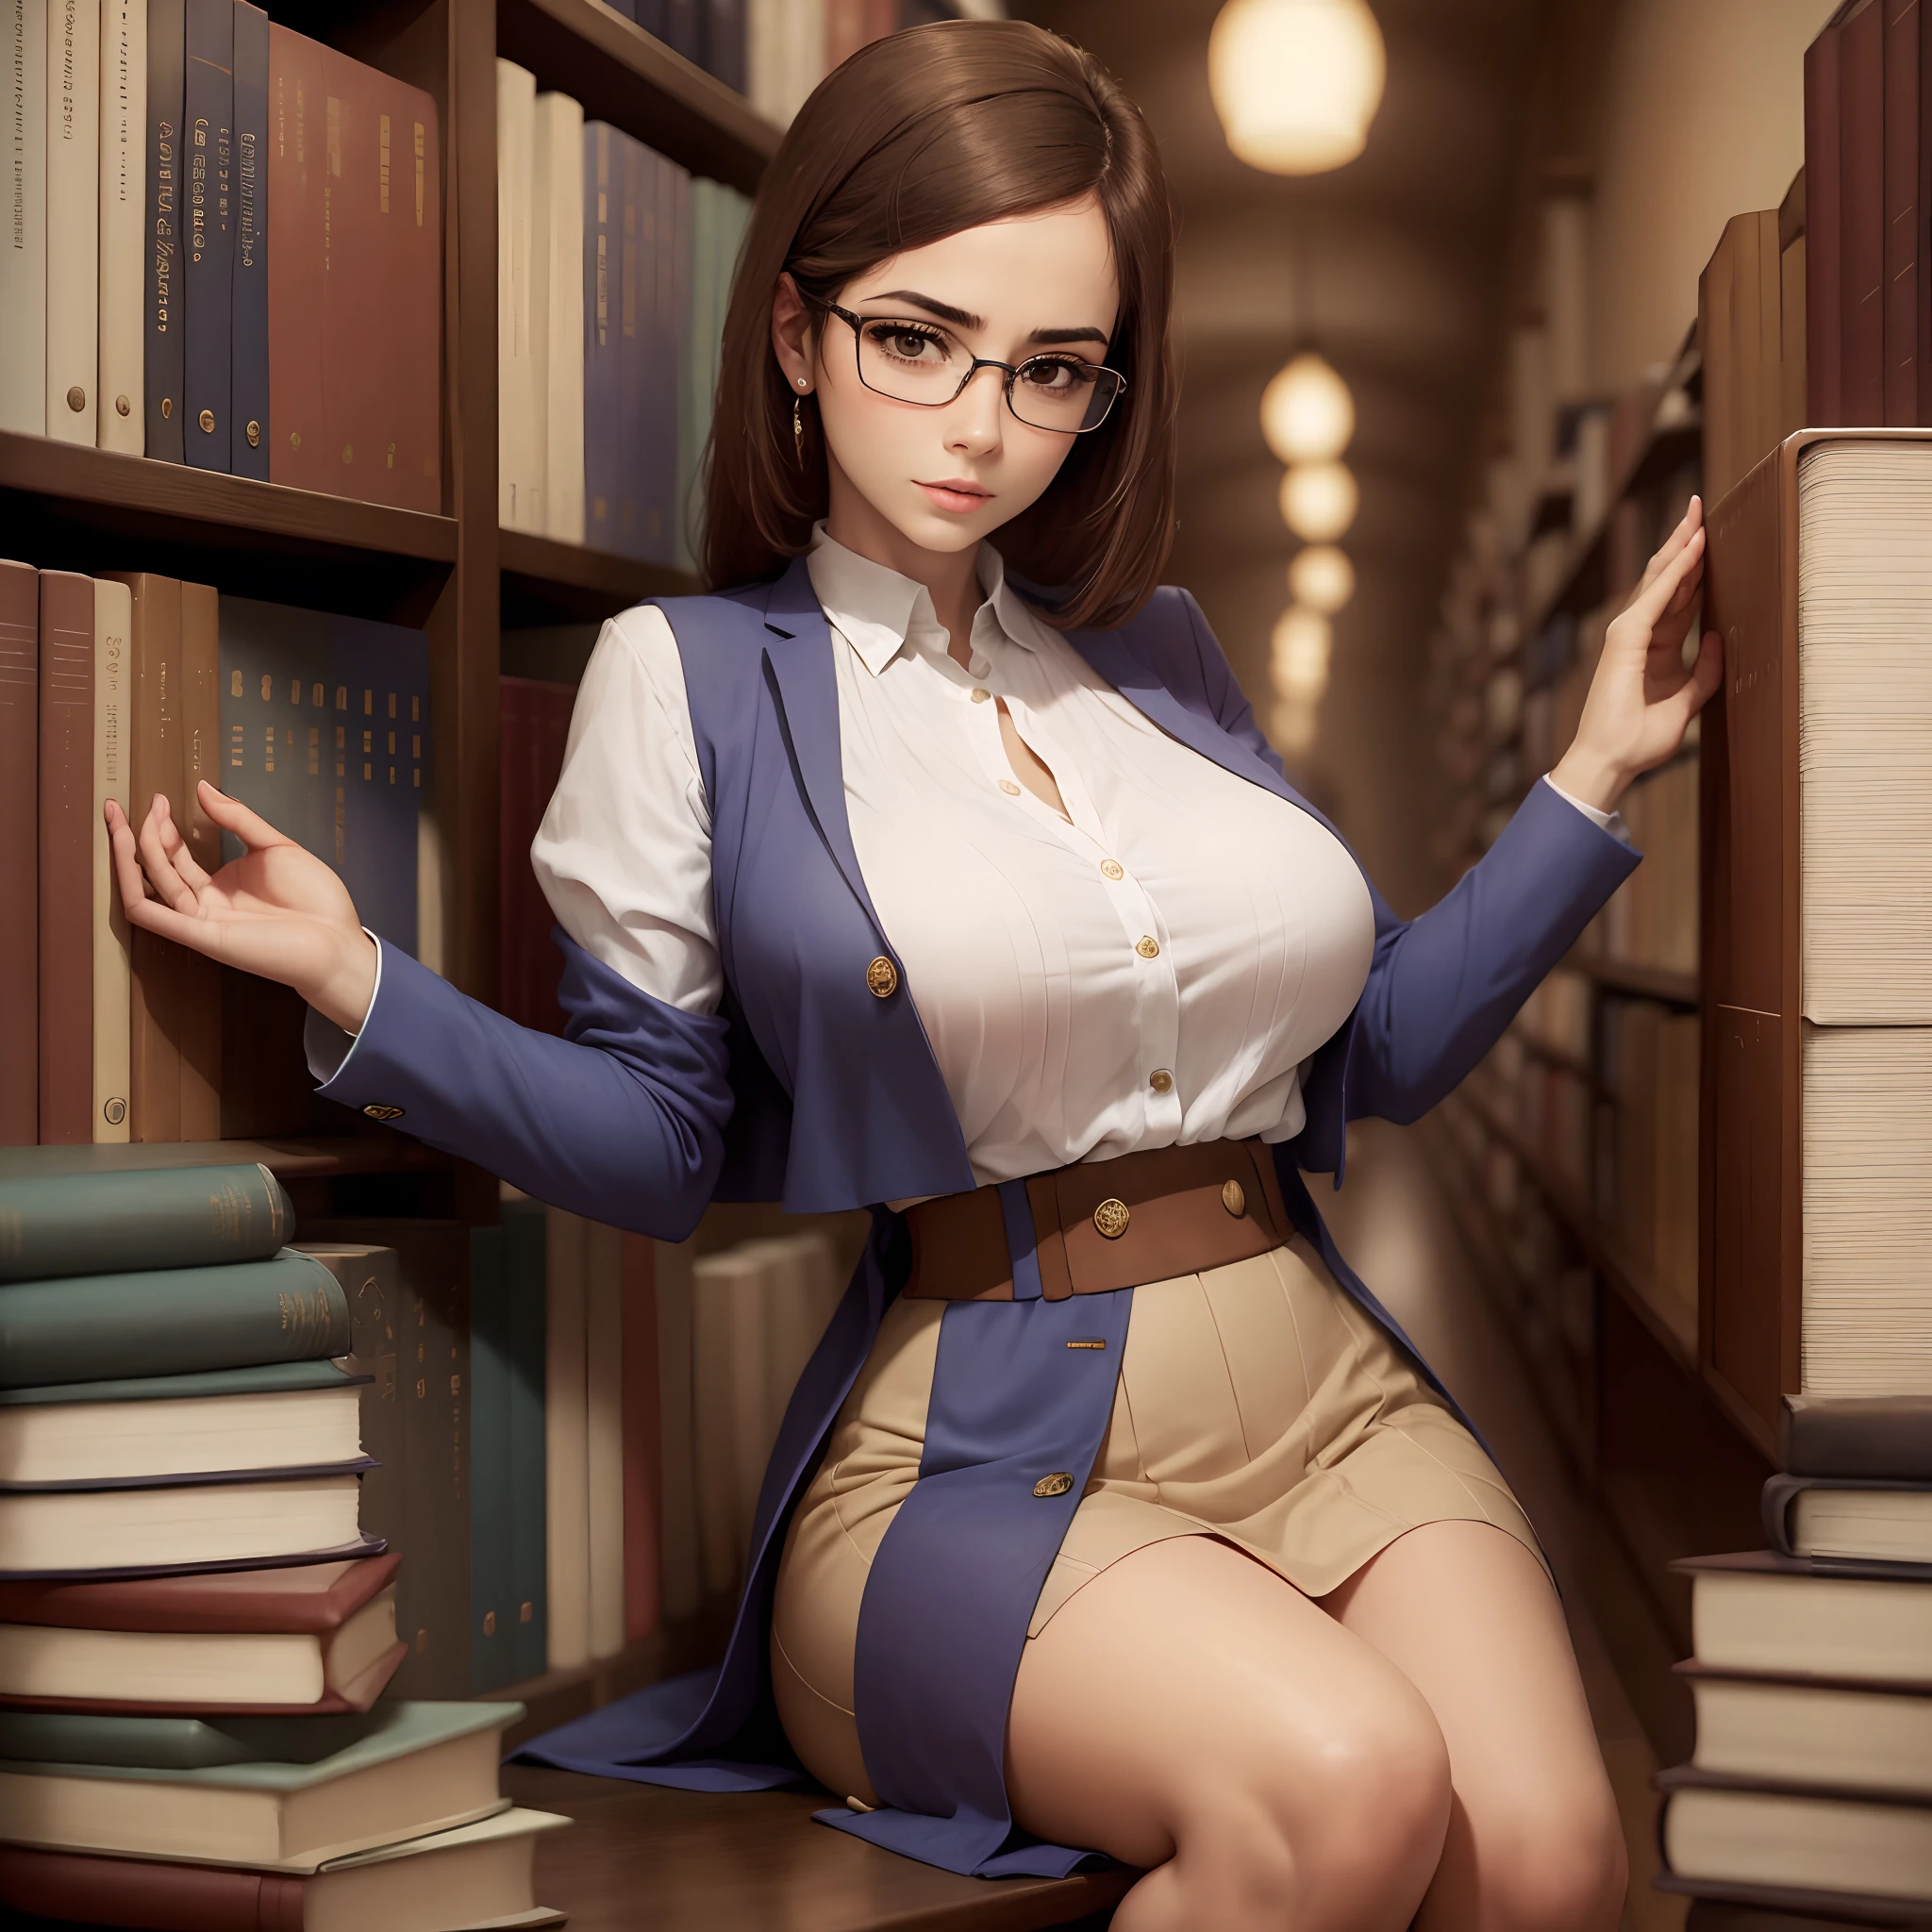 1امرأة, جميلة, حسي, في المكتبة, مع نظارات, الصدور الكبيرة, معتدل البنيه, رائع